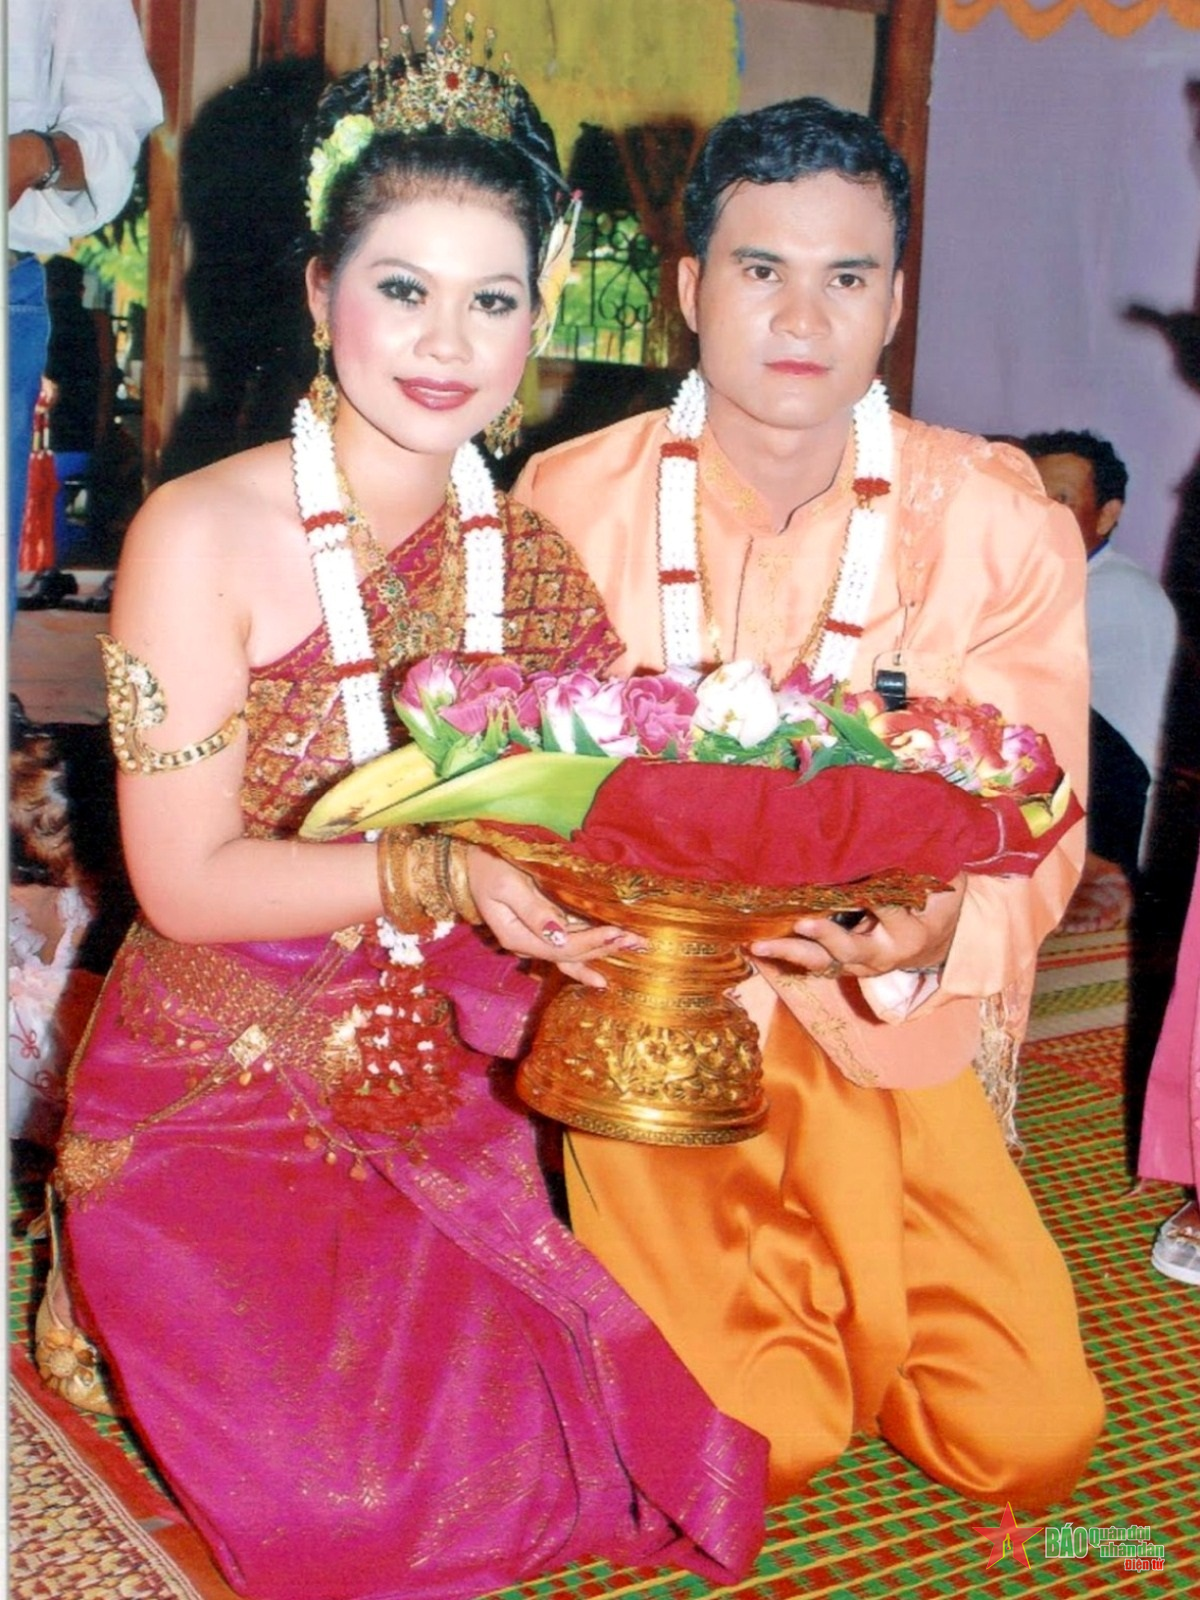 Rực rỡ trang phục lễ cưới của người Khmer | Báo Dân tộc và Phát triển